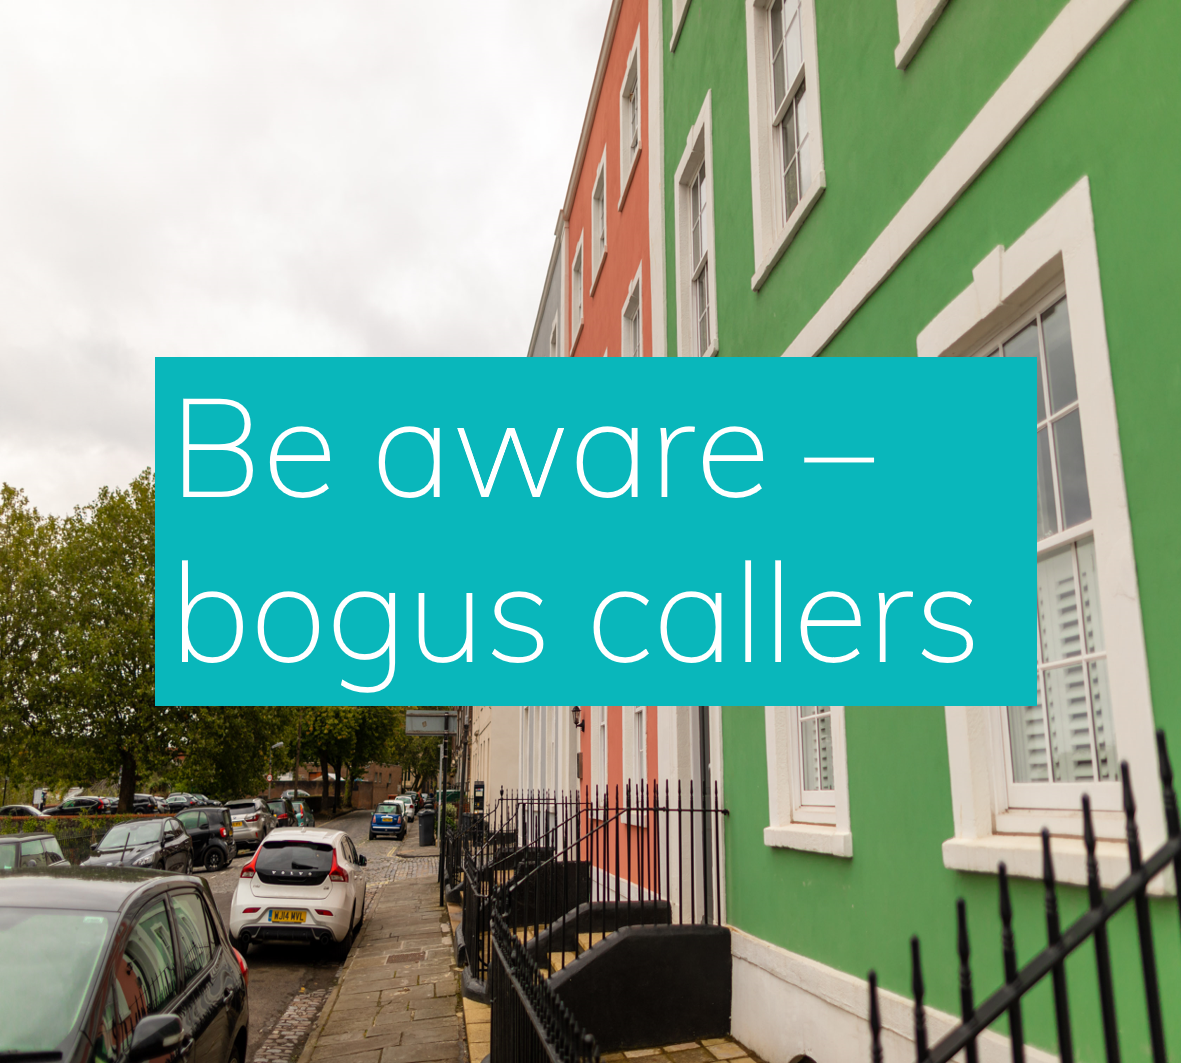 Be aware of bogus callers